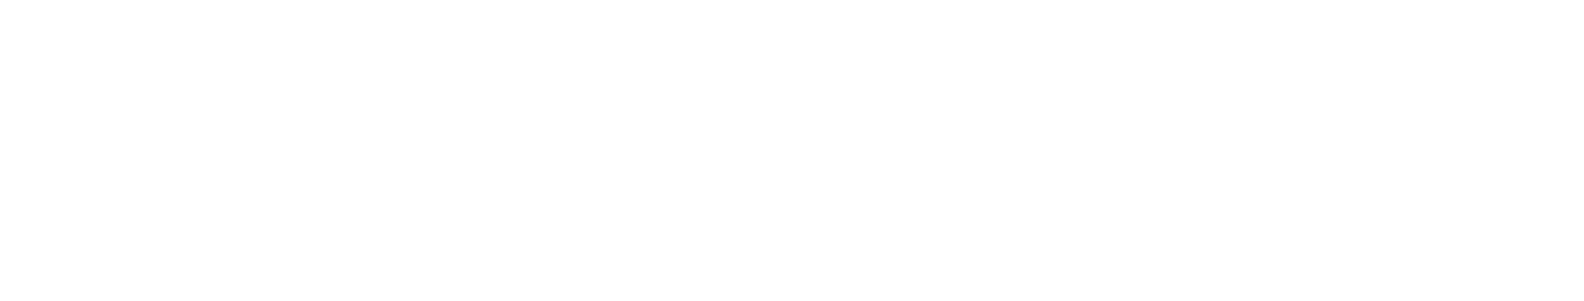 Amphenol logo grand pour les fonds sombres (PNG transparent)